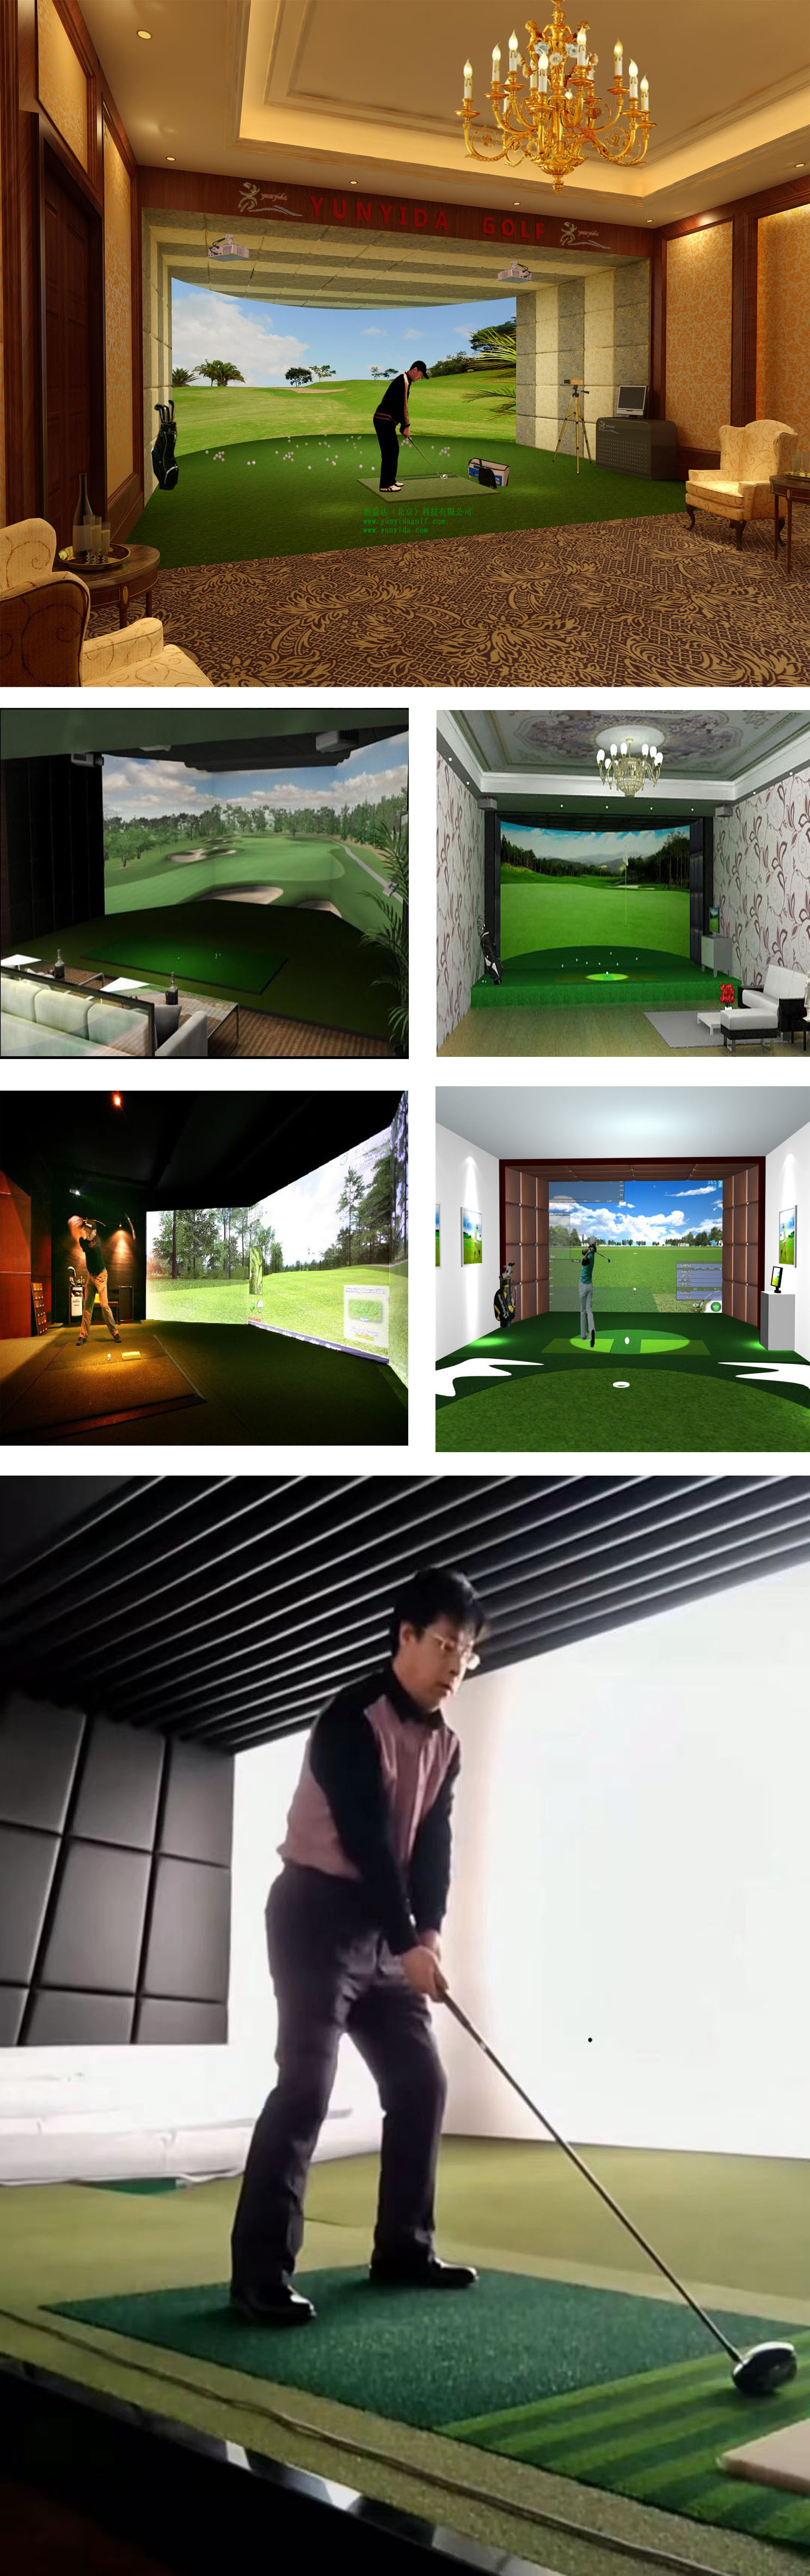 室内高尔夫系统-1.jpg